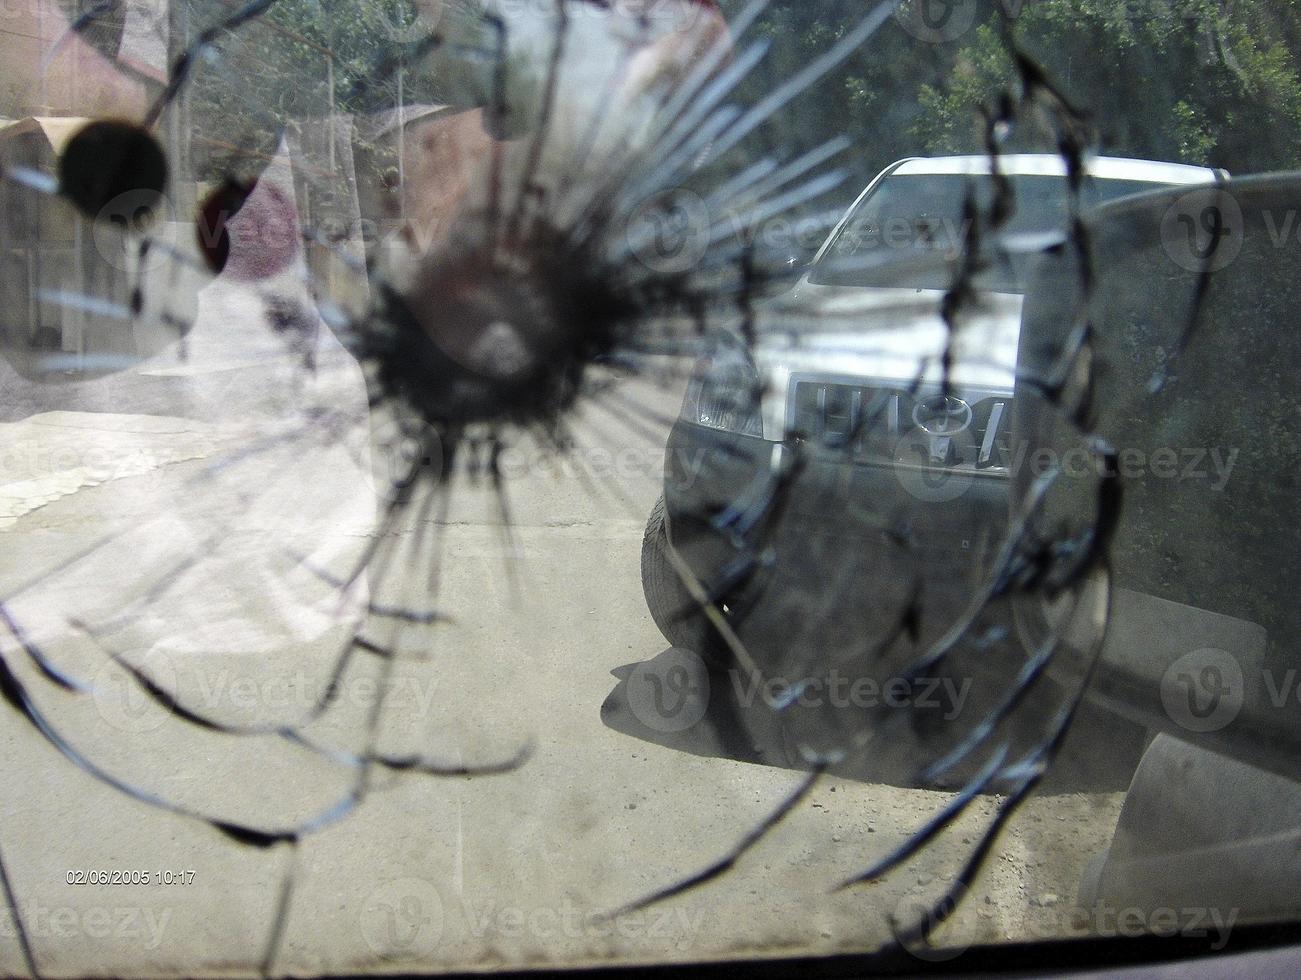 grosse fissure sur le pare-brise de la voiture à partir d'une balle de tireur d'élite militaire fragmentée photo